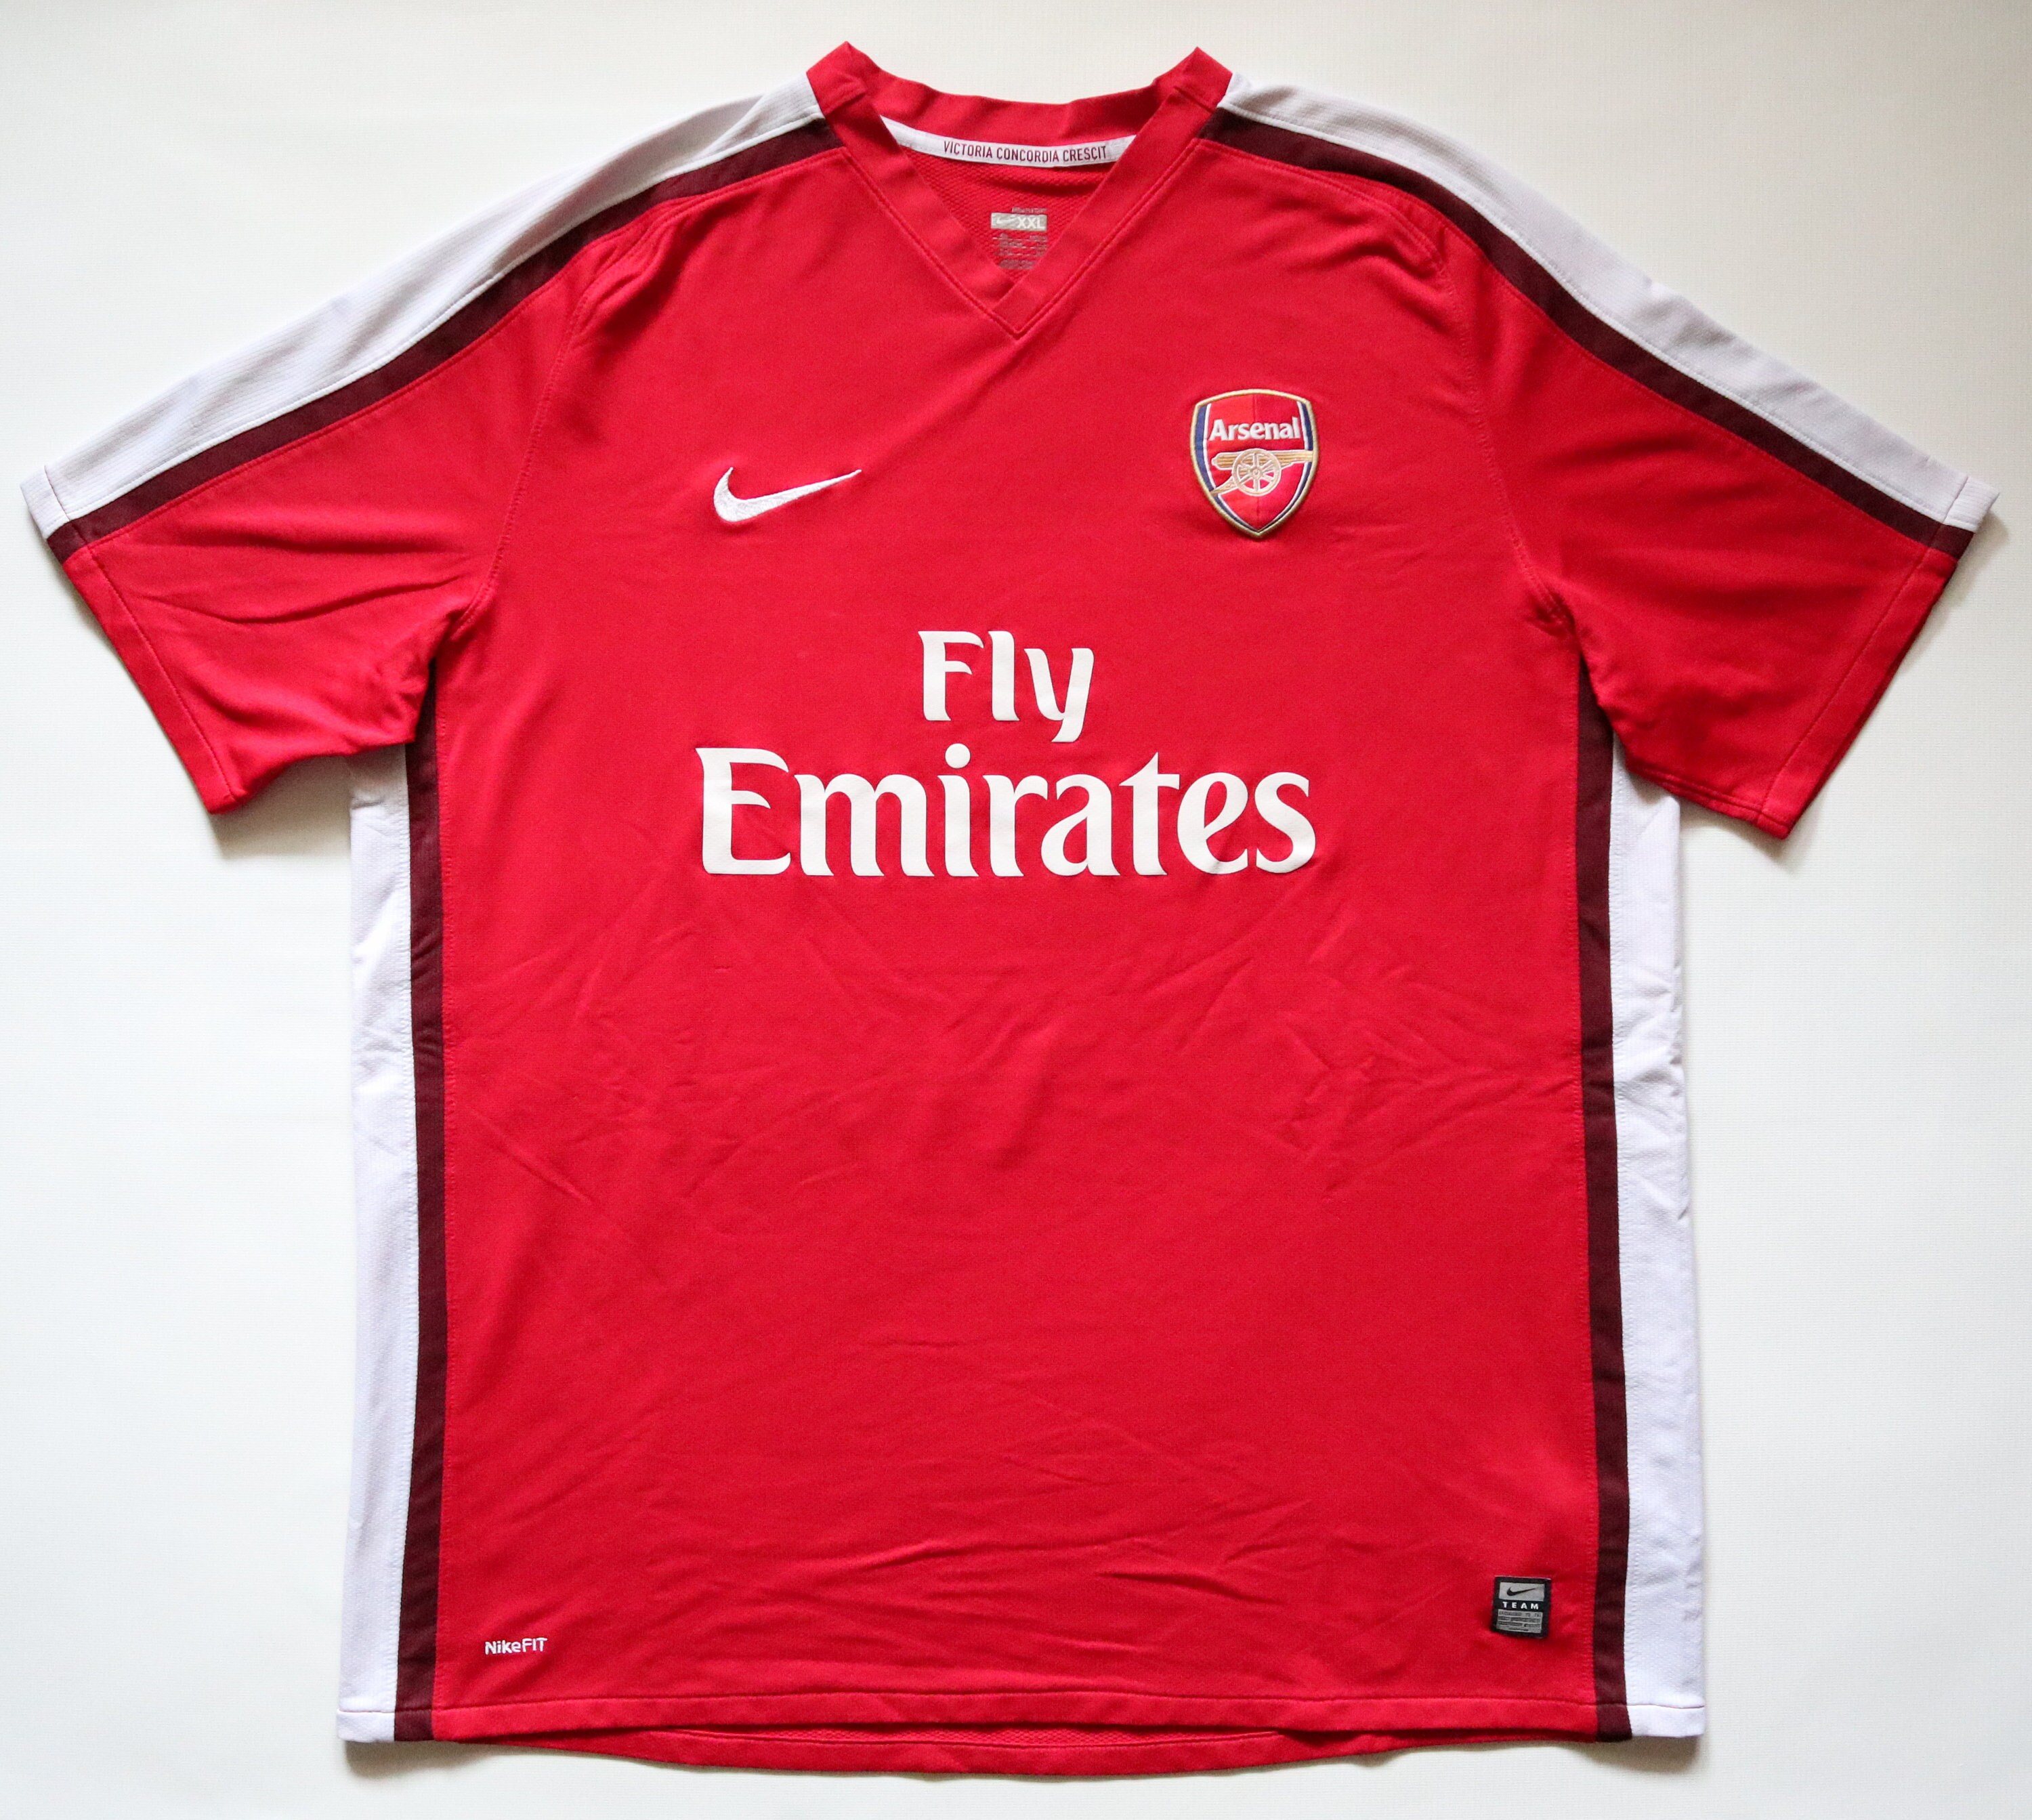 claro pobreza Es Arsenal 2008/2009 Home Football Soccer Jersey Shirt Nike Red - Etsy